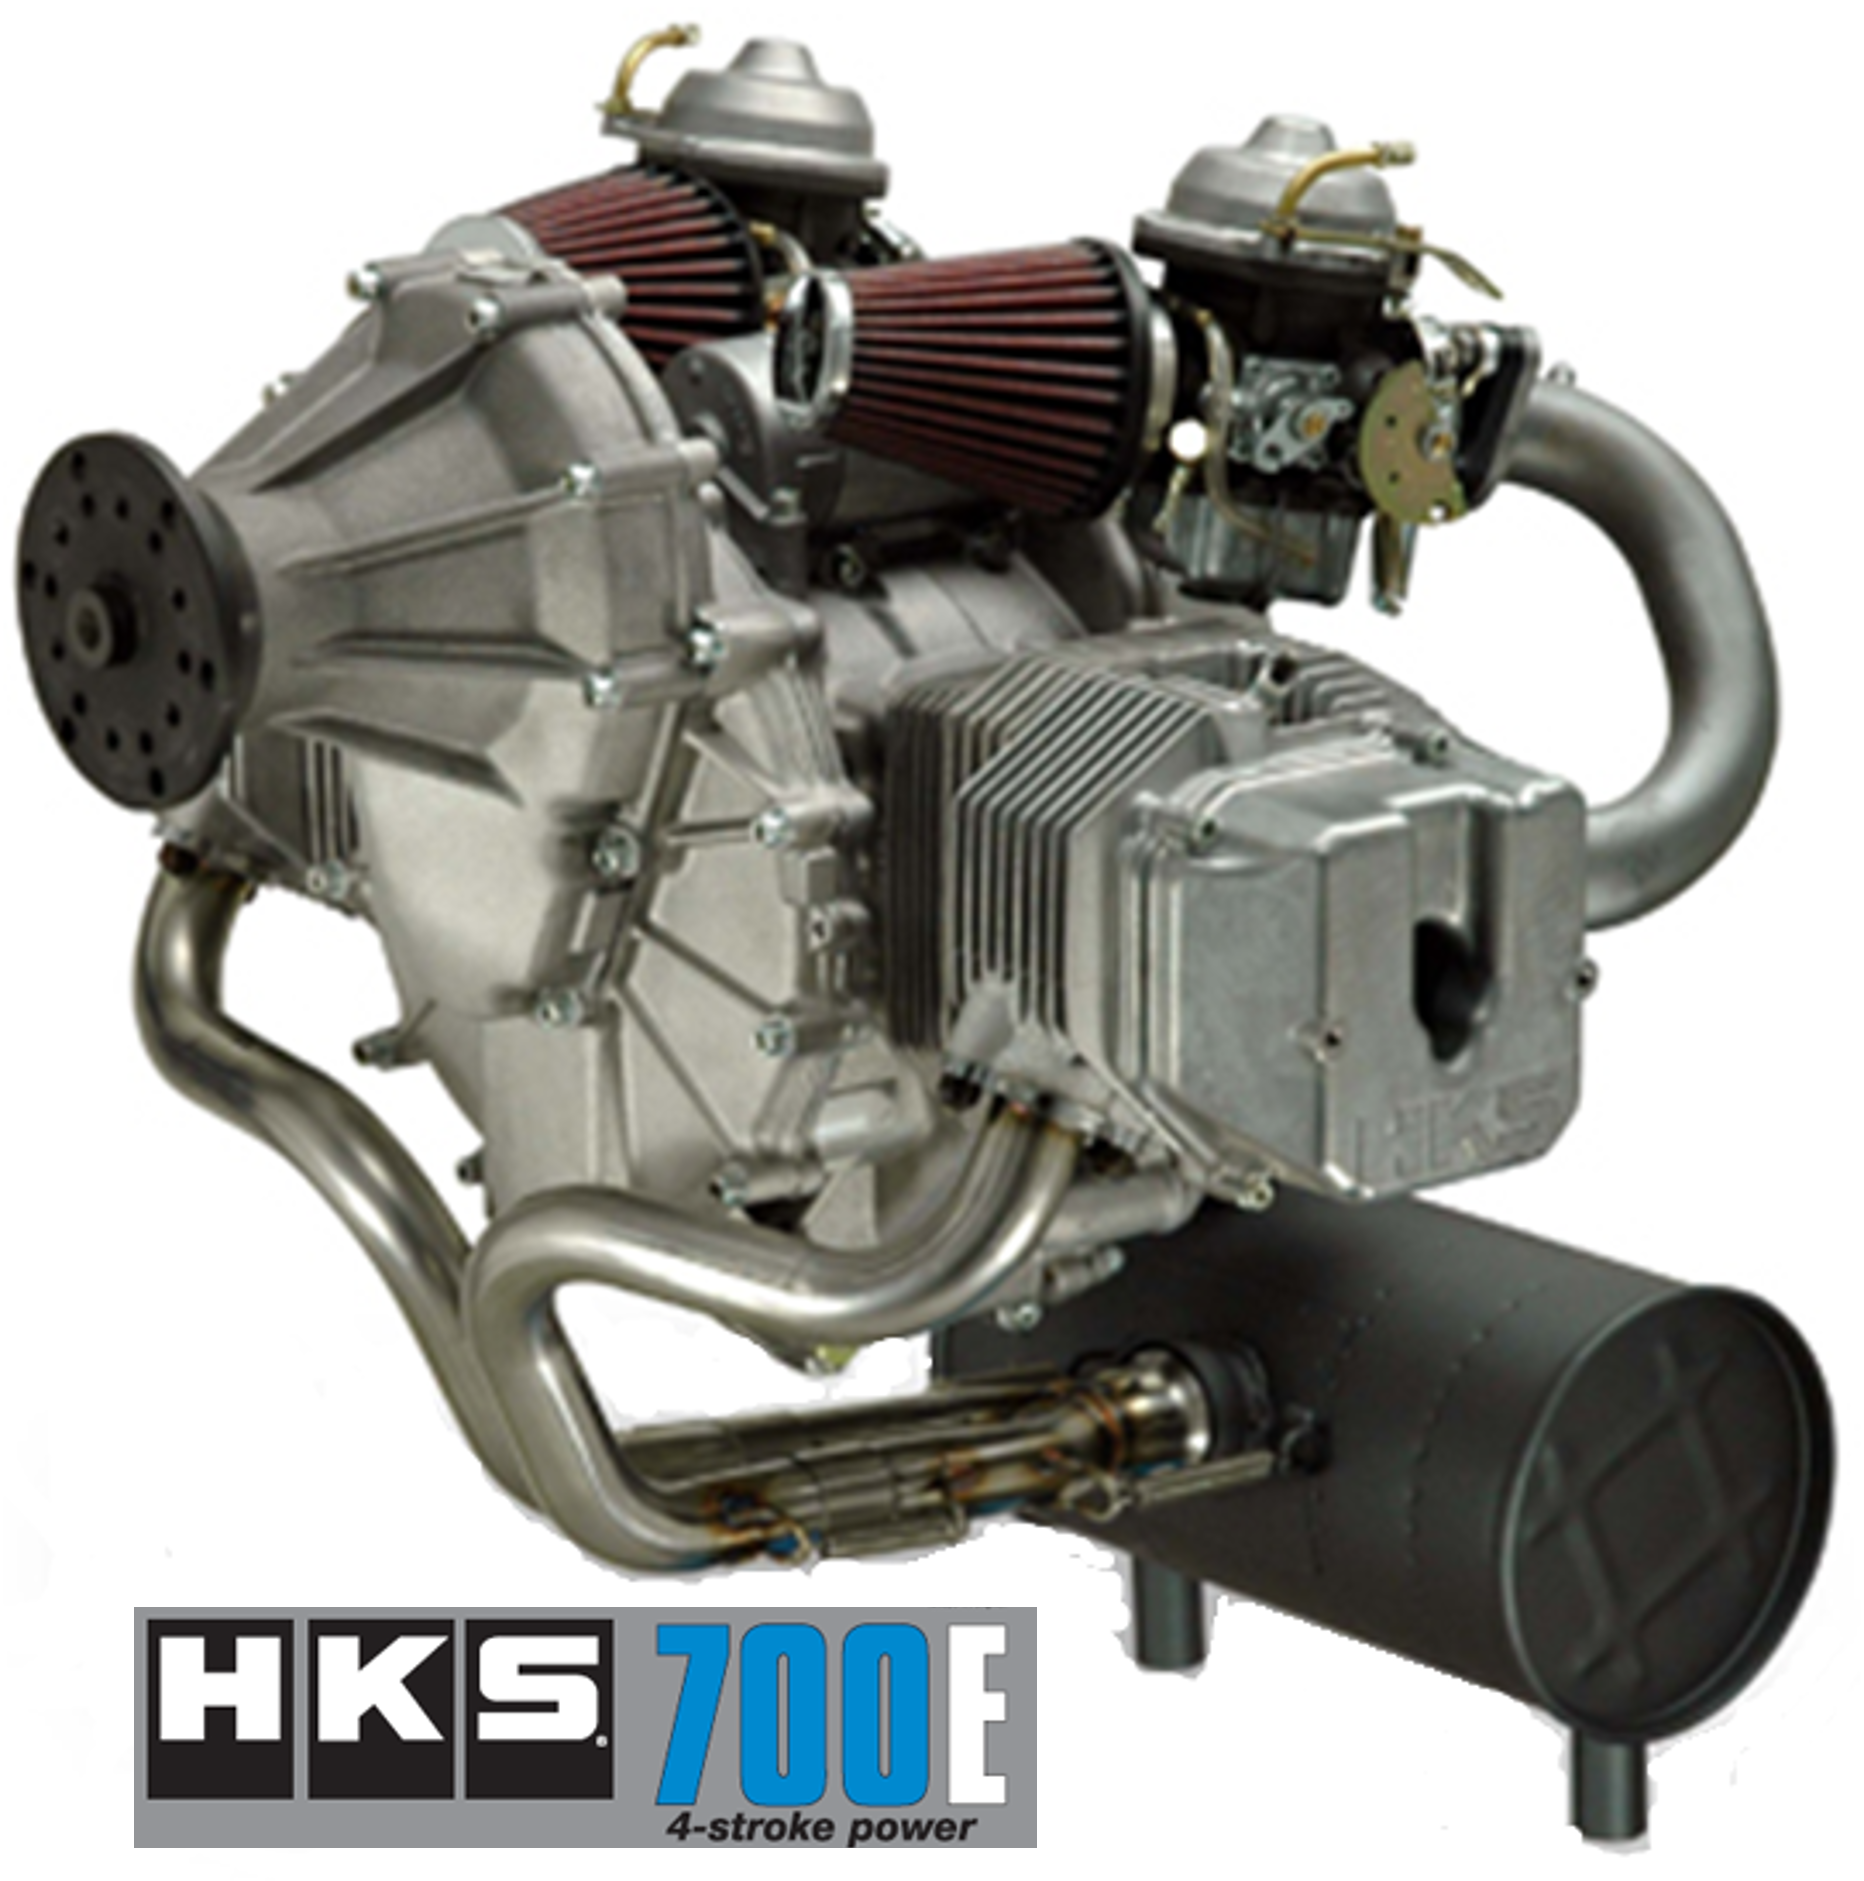 HKS 700E Aircraft Engine